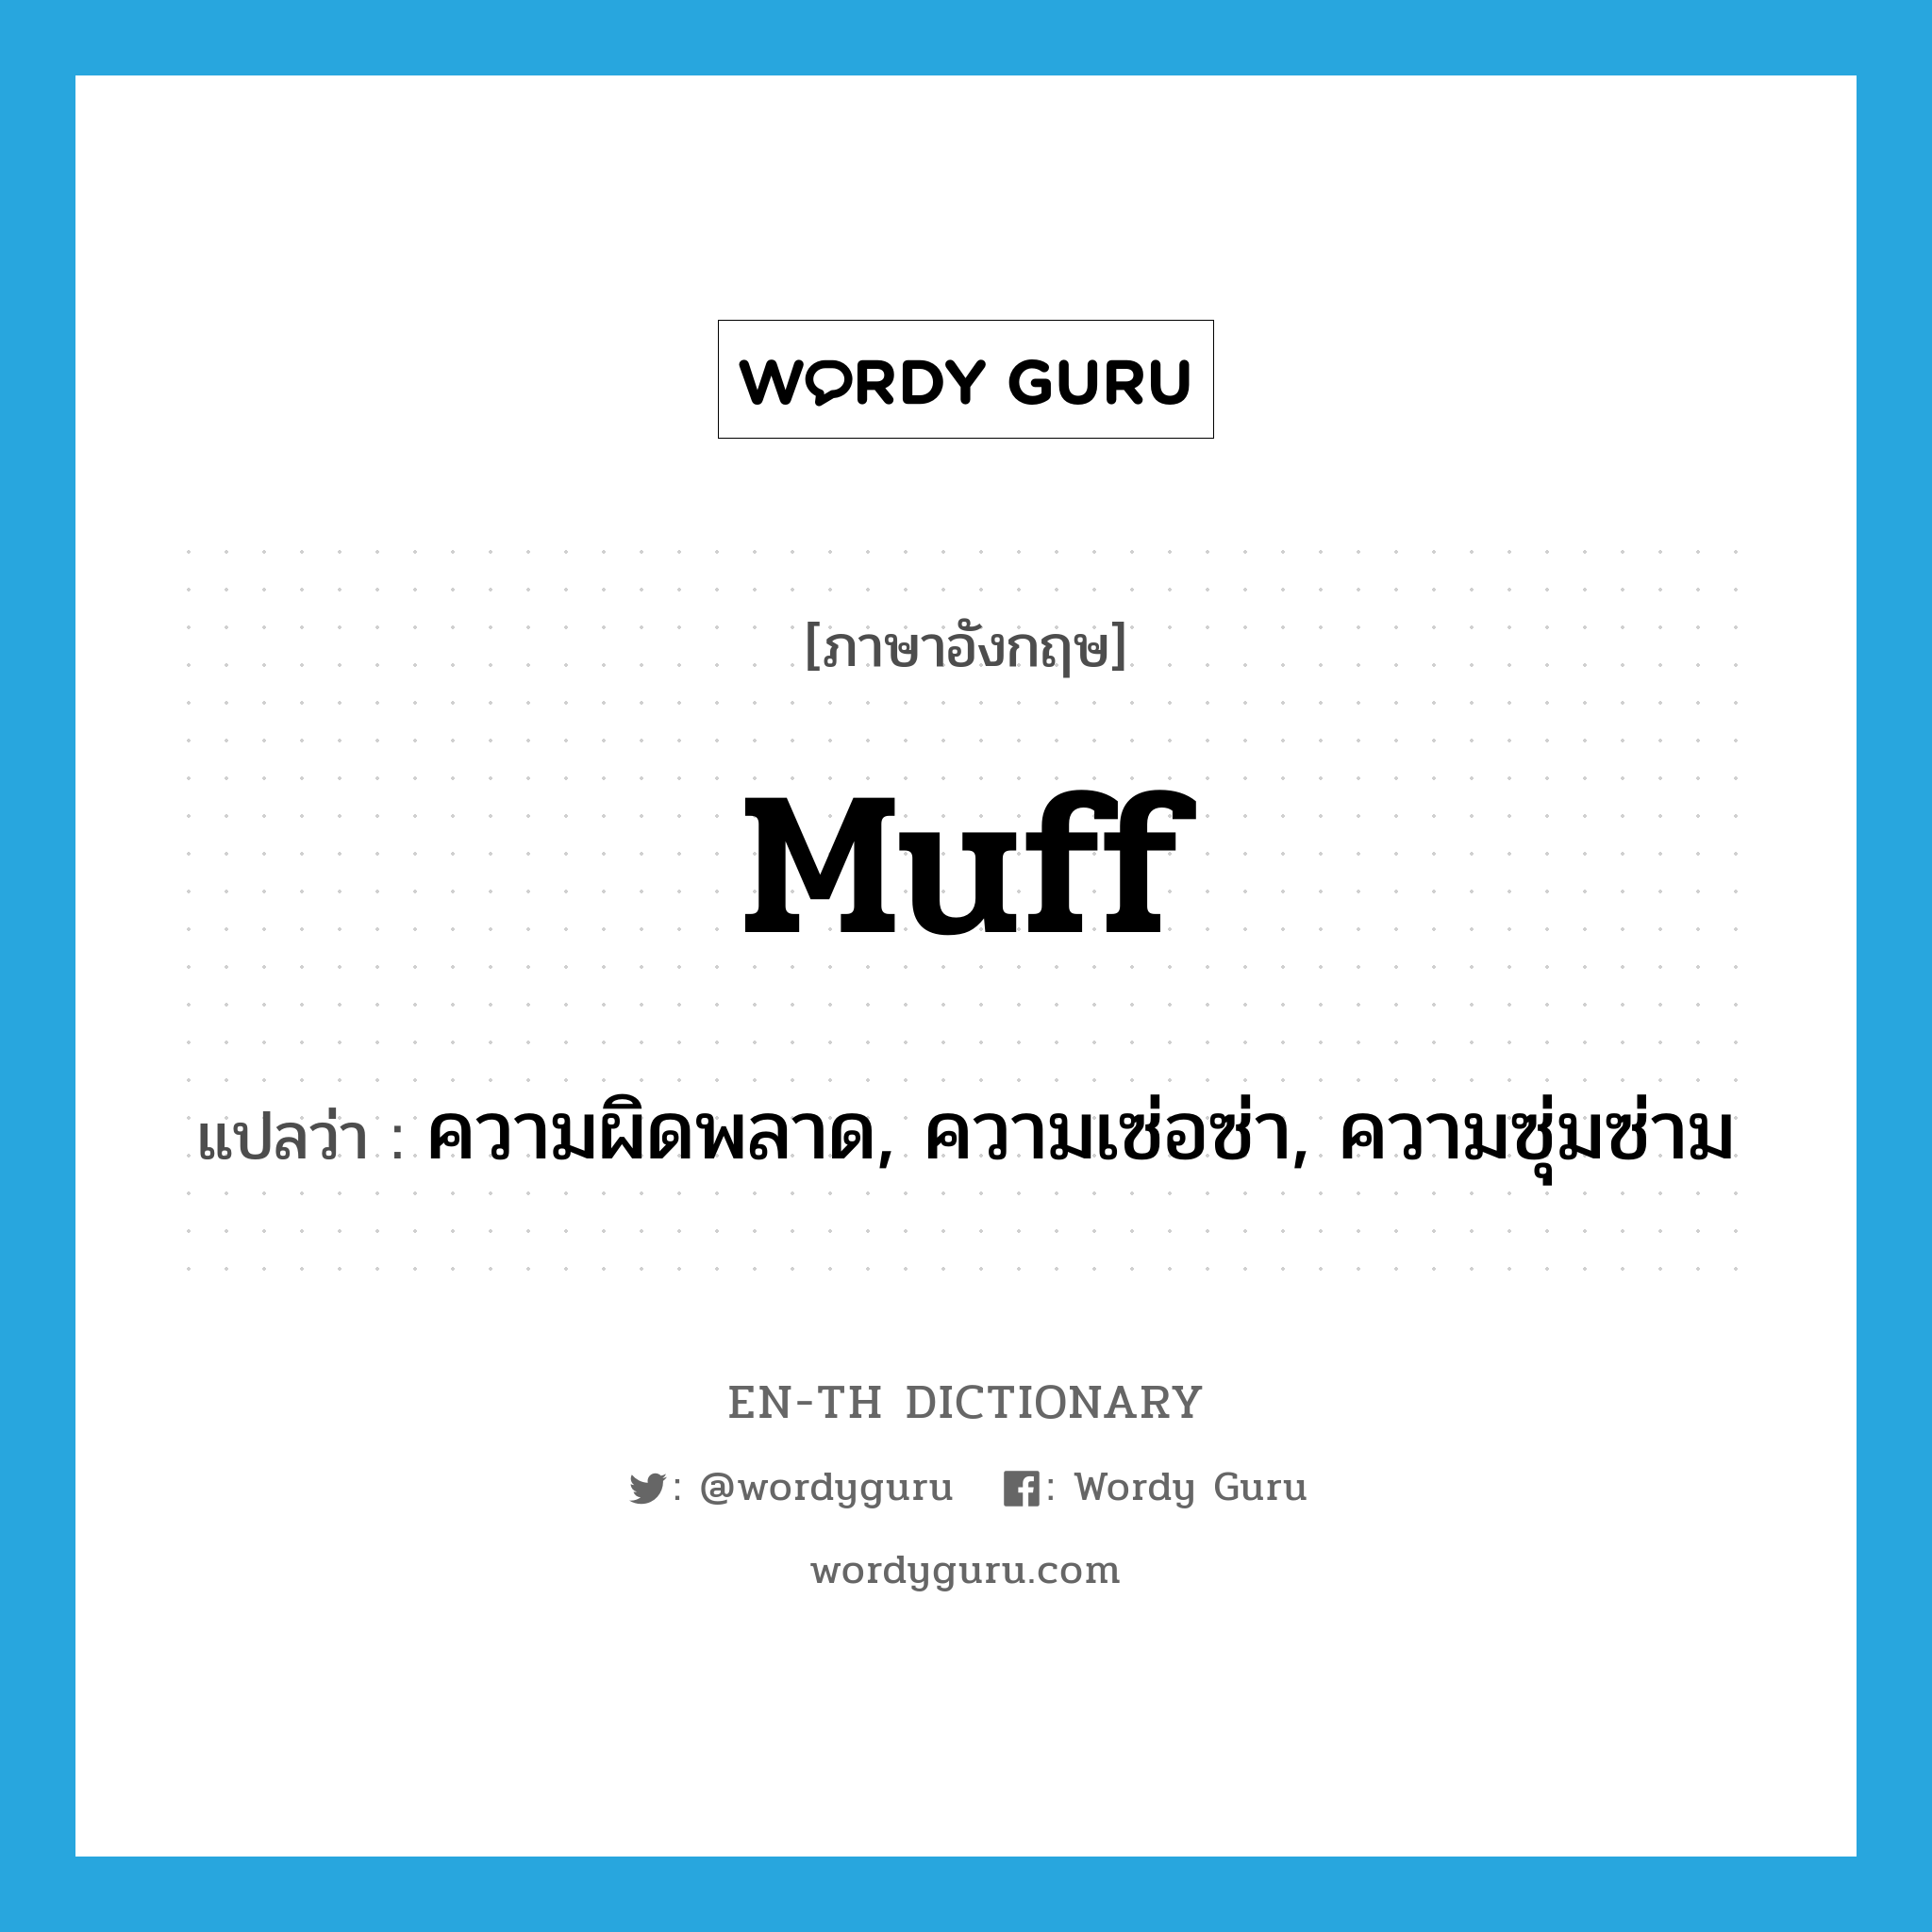 muff แปลว่า?, คำศัพท์ภาษาอังกฤษ muff แปลว่า ความผิดพลาด, ความเซ่อซ่า, ความซุ่มซ่าม ประเภท N หมวด N